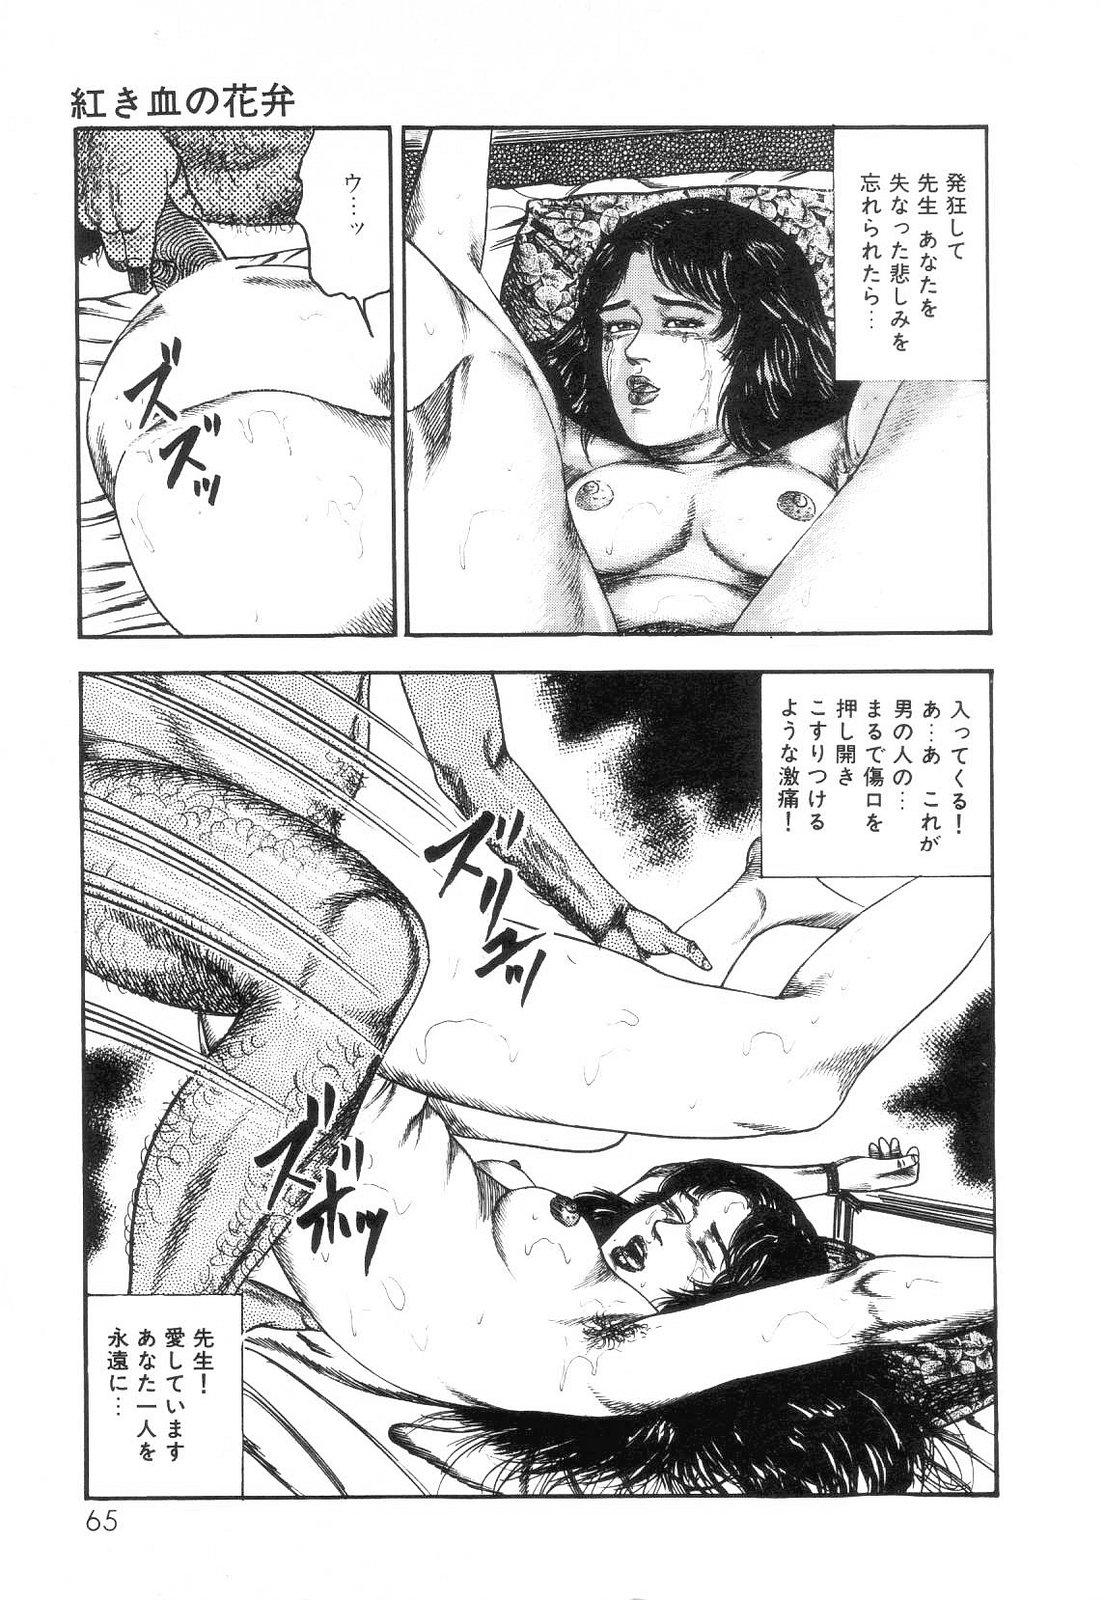 Shiro no Mokushiroku Vol. 2 - Shion Ryoujoku no Shou 66